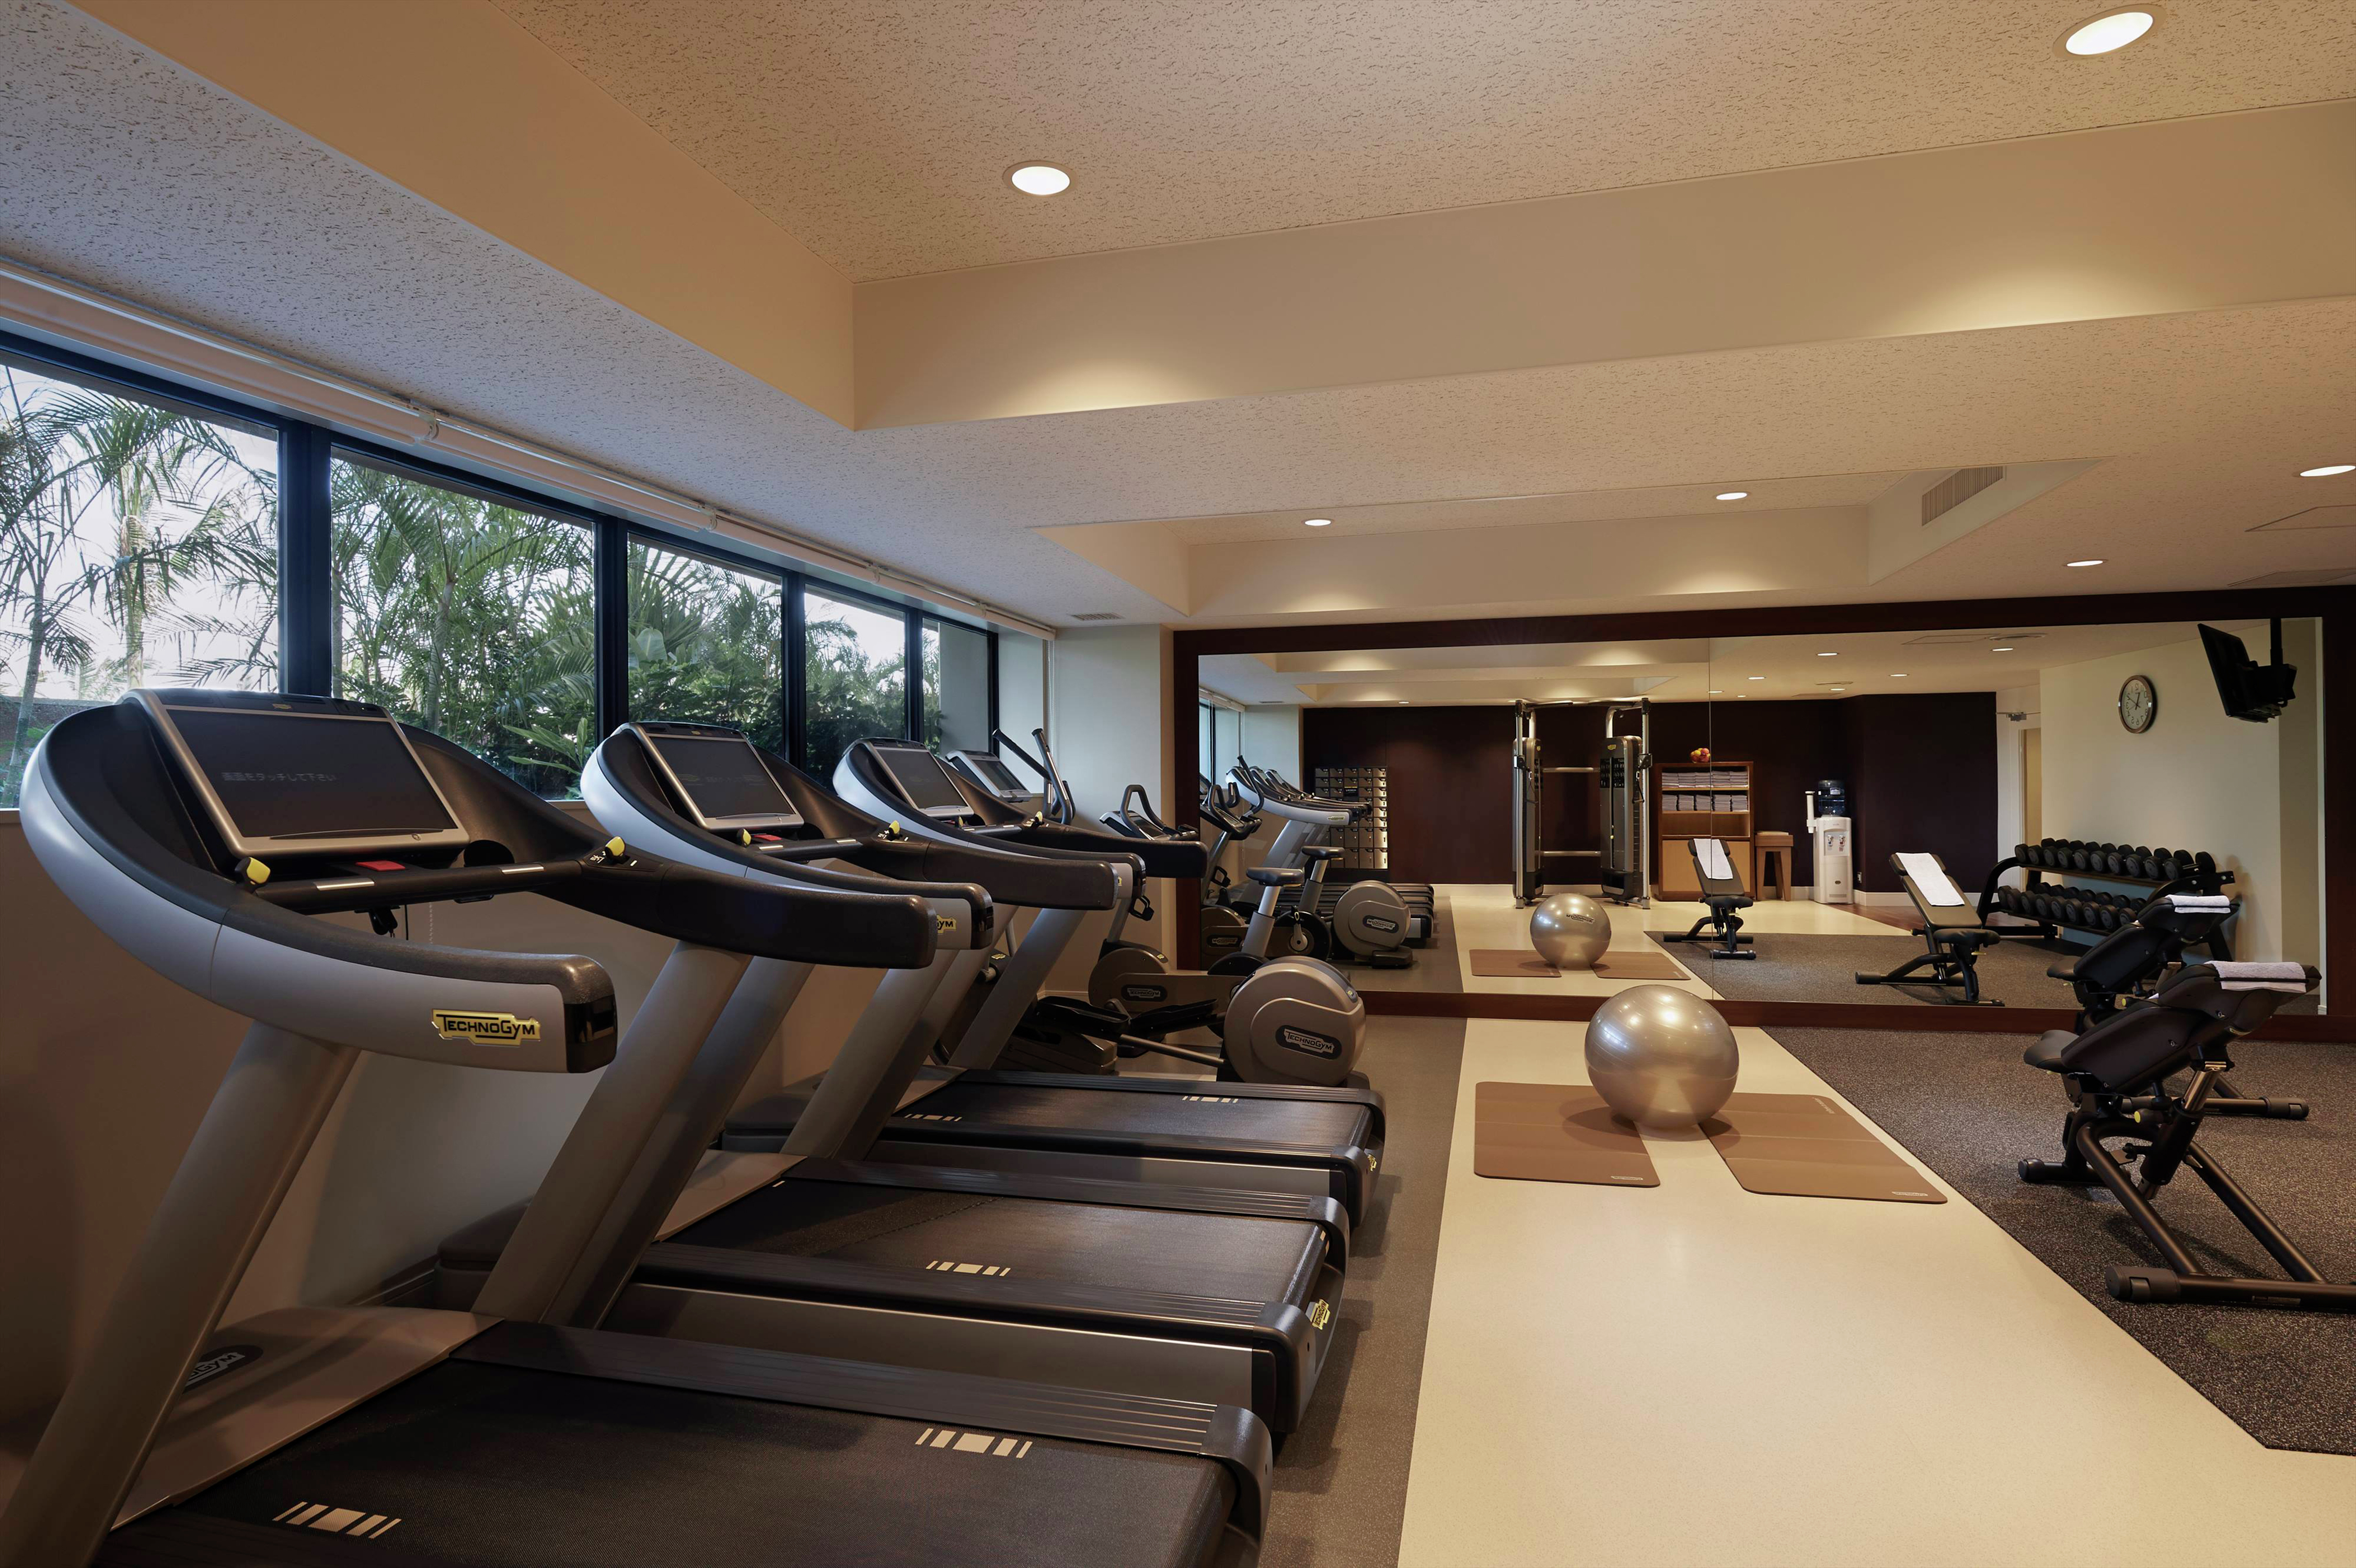 Fitness Room, Treadmills